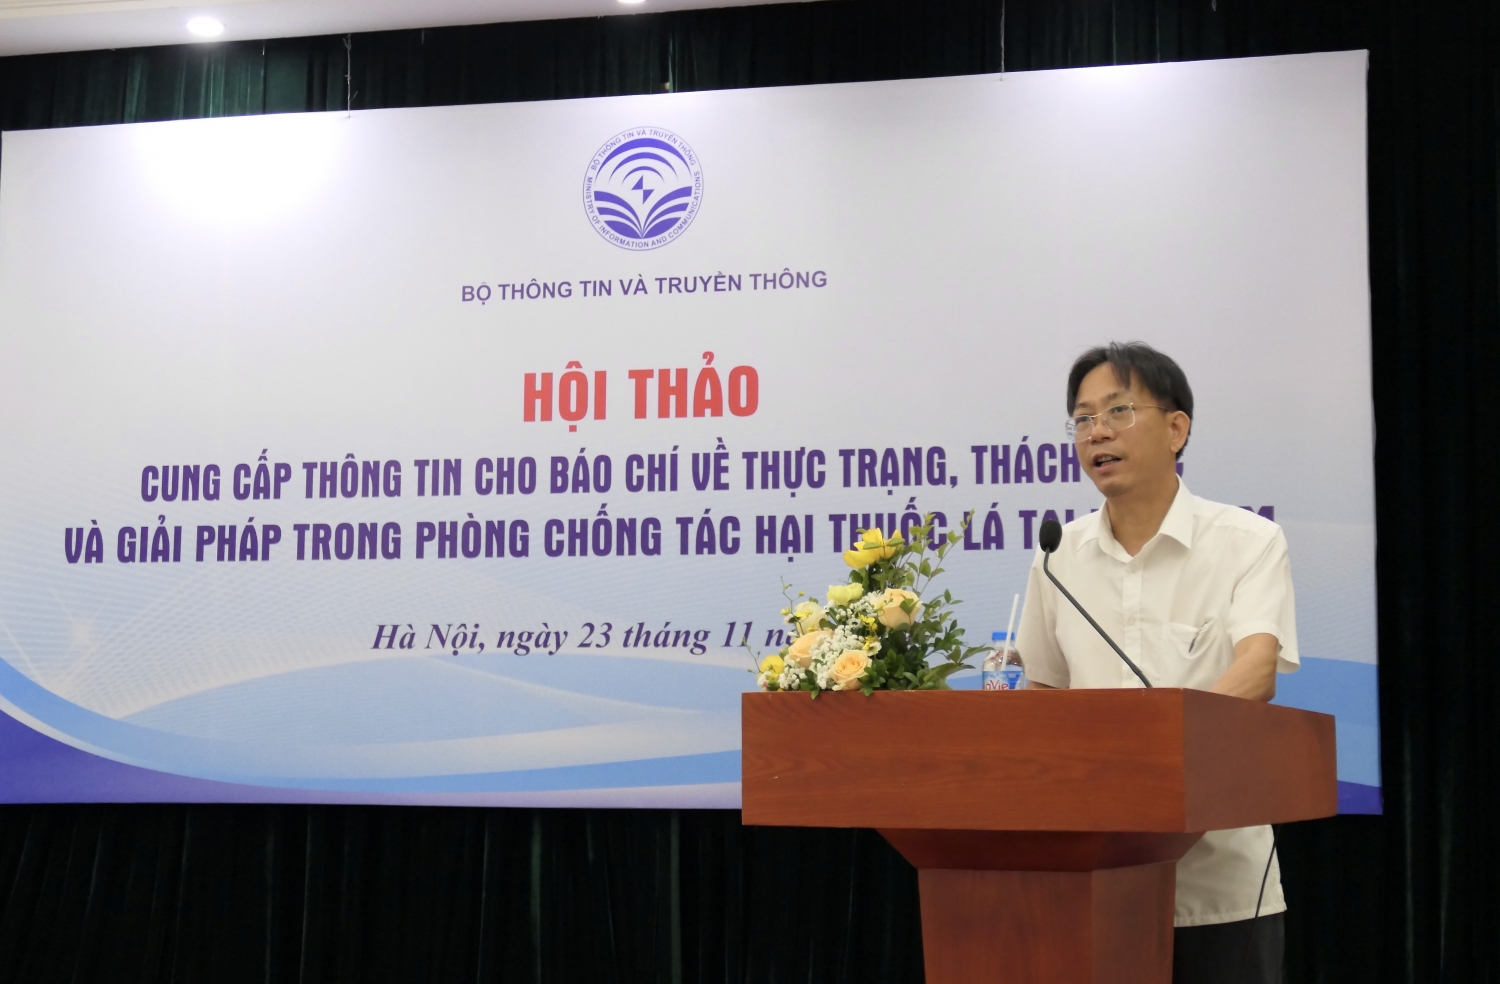 Thực trạng, thách thức và giải pháp trong phòng chống tác hại thuốc lá tại Việt Nam 2022